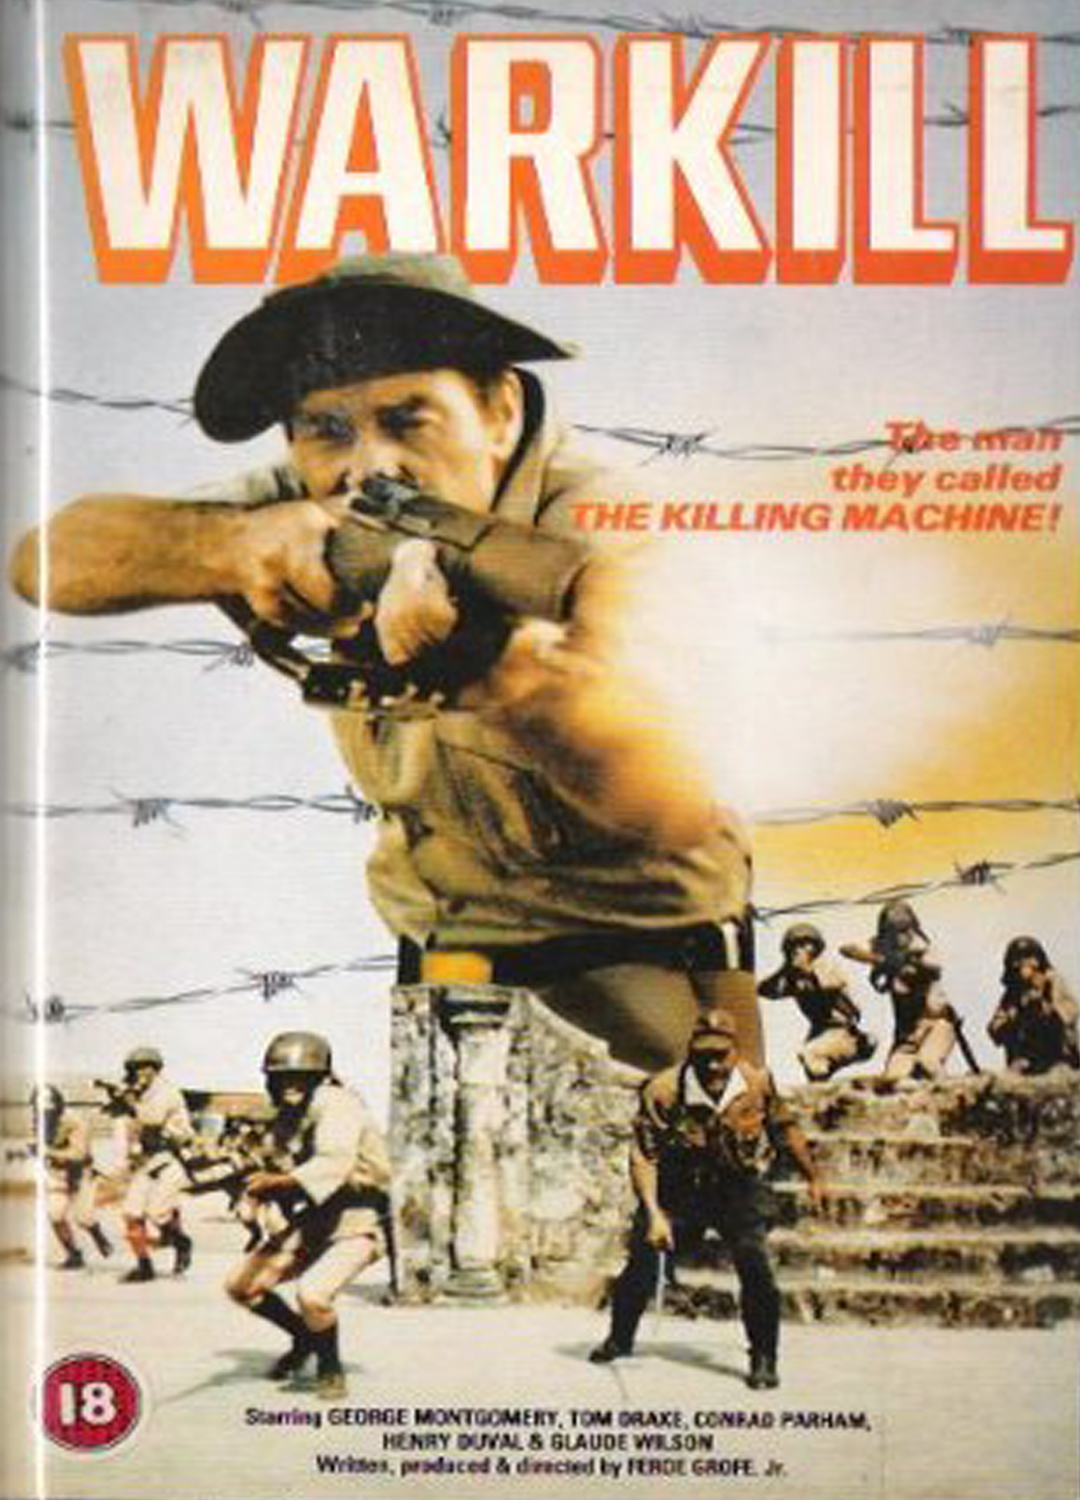 film perang vietnam